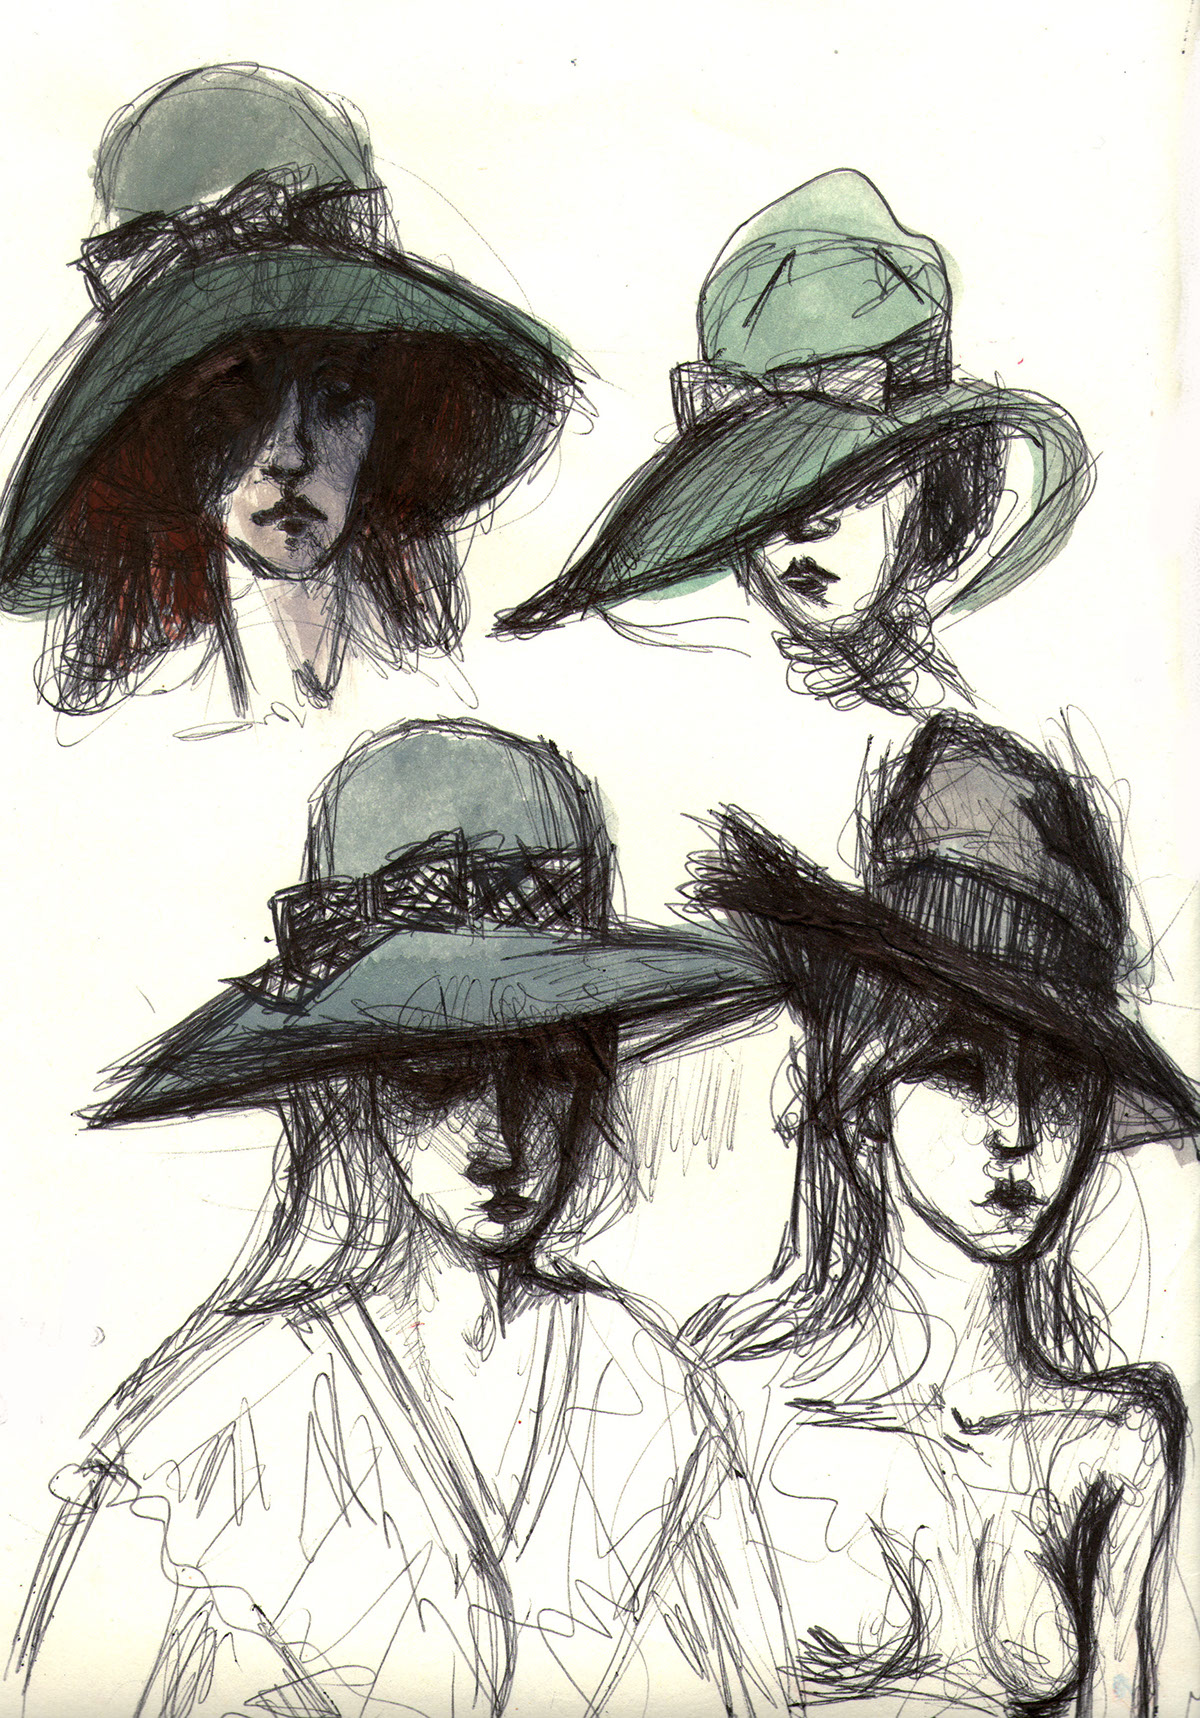 atelier Amedeo Modigliani Modi dedo jeanne hébuterne Melancholy hat inspire italian artists